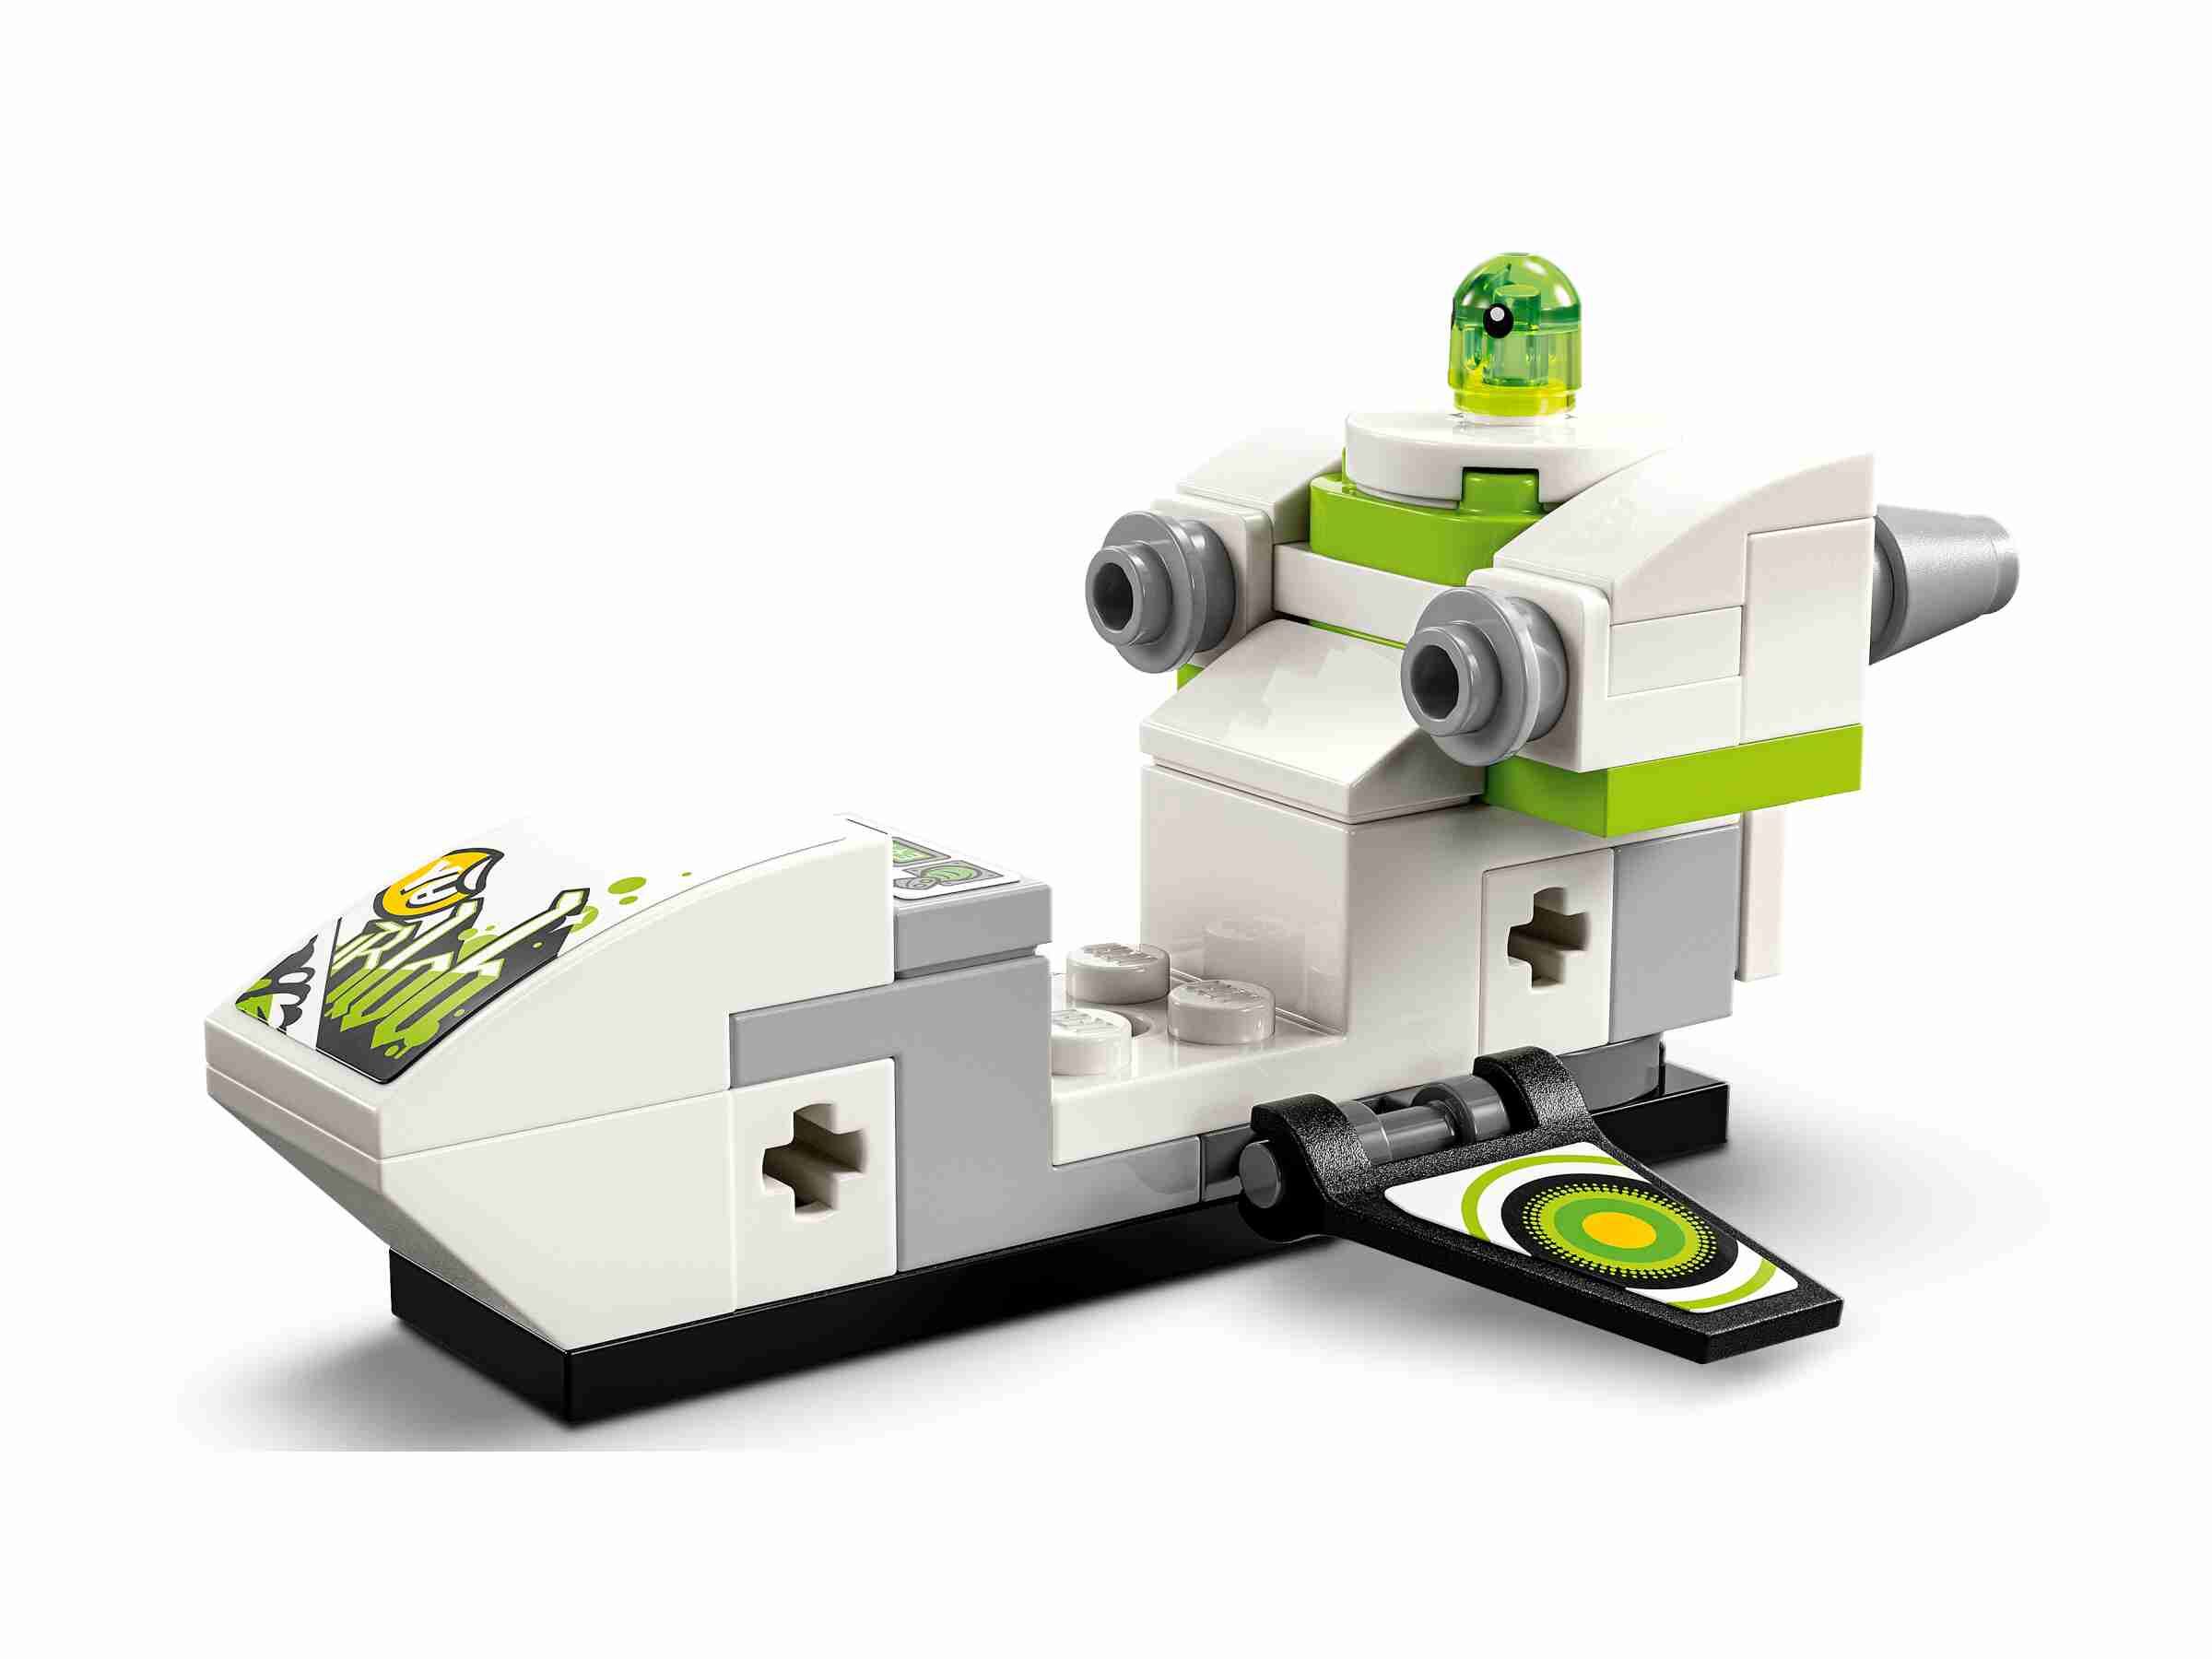 LEGO 71471 DREAMZzz Mateos Geländeflitzer, 2 Bauoptionen, Mateo mit Shooter